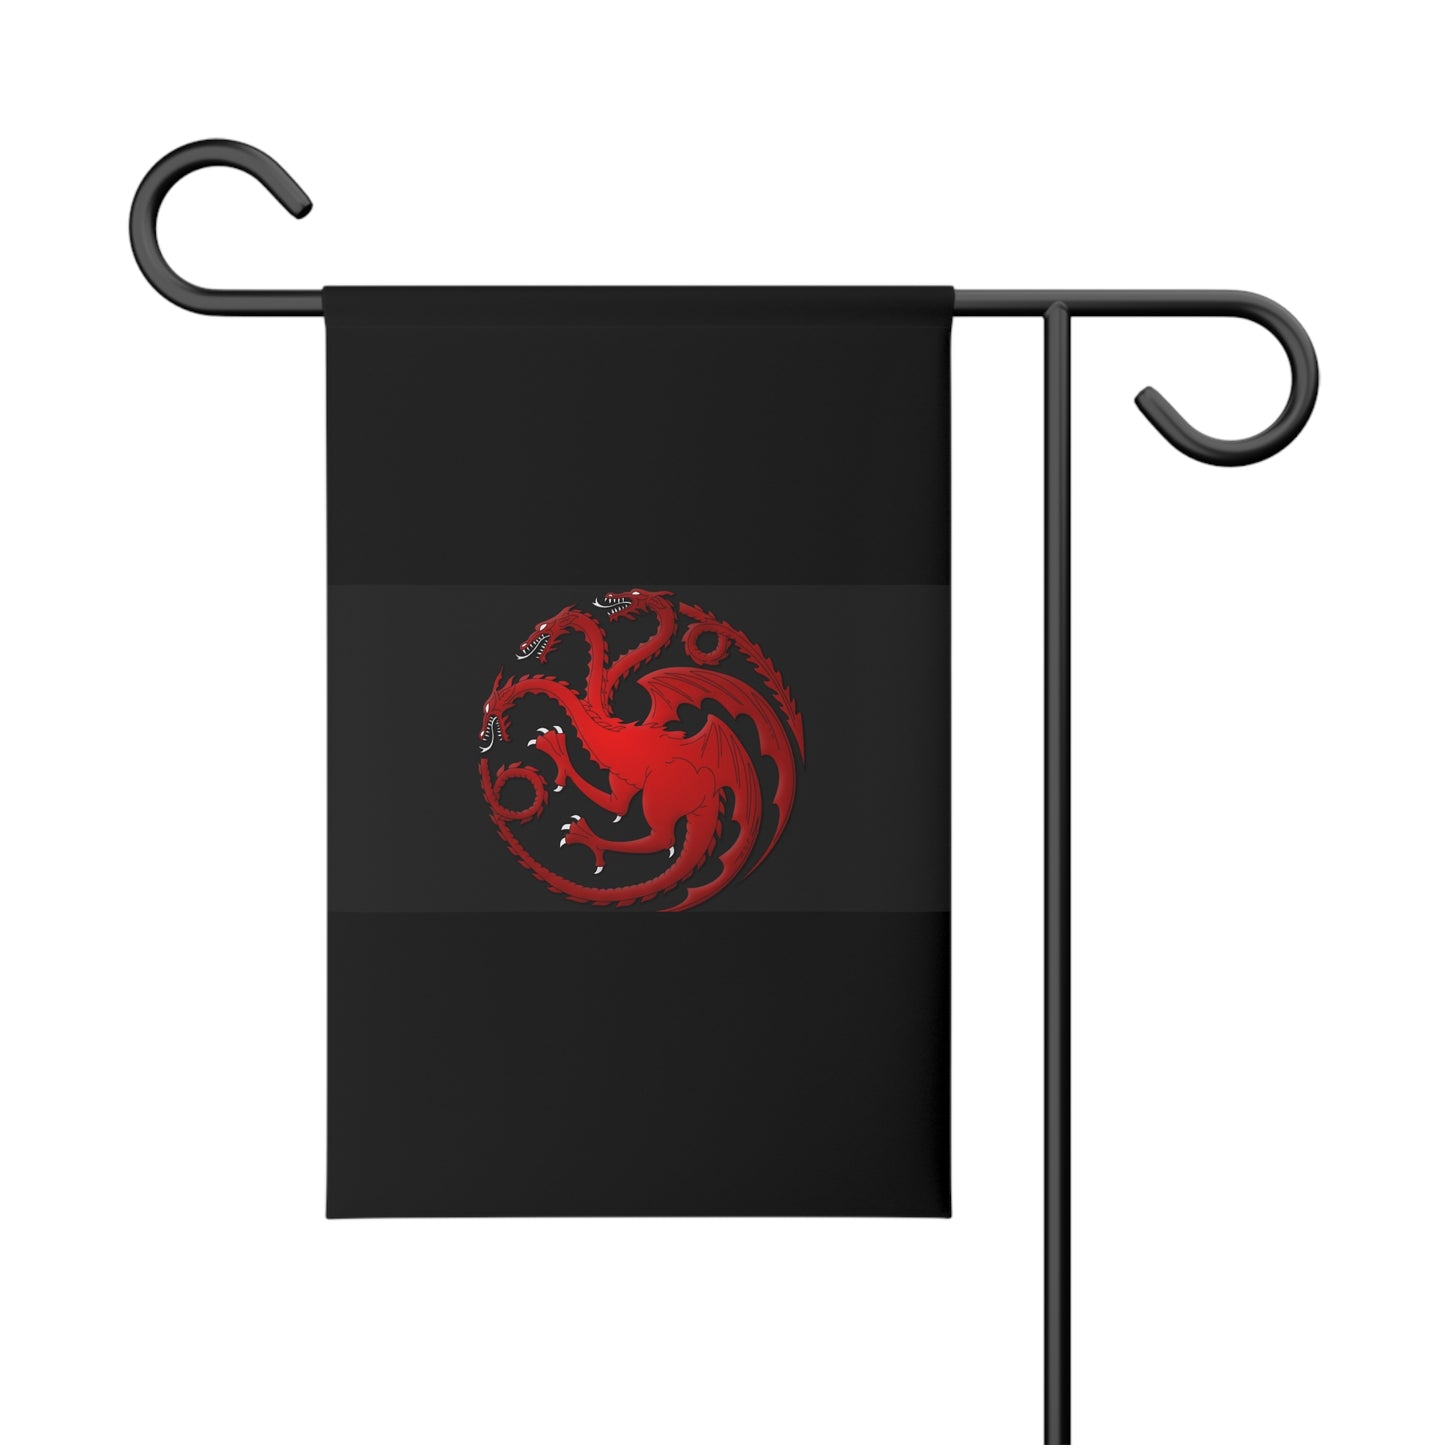 Team Black House Targaryen garden banner